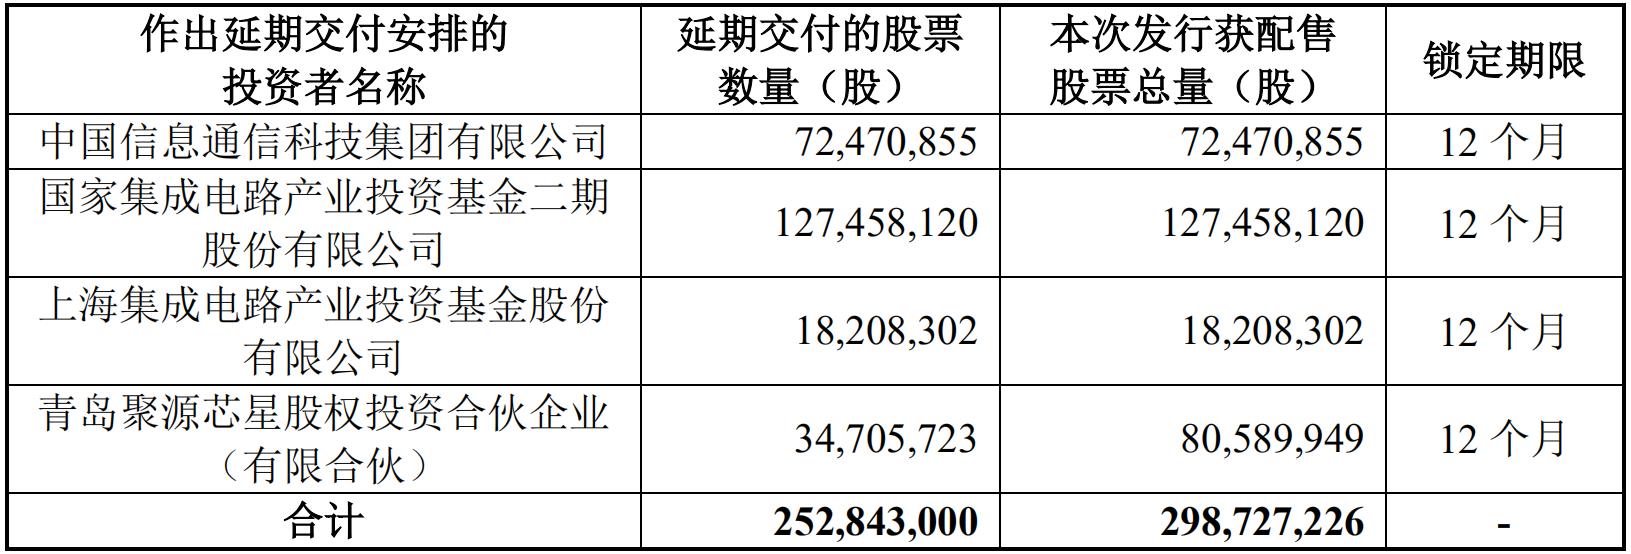 中芯国际最终超额募资532.3亿元